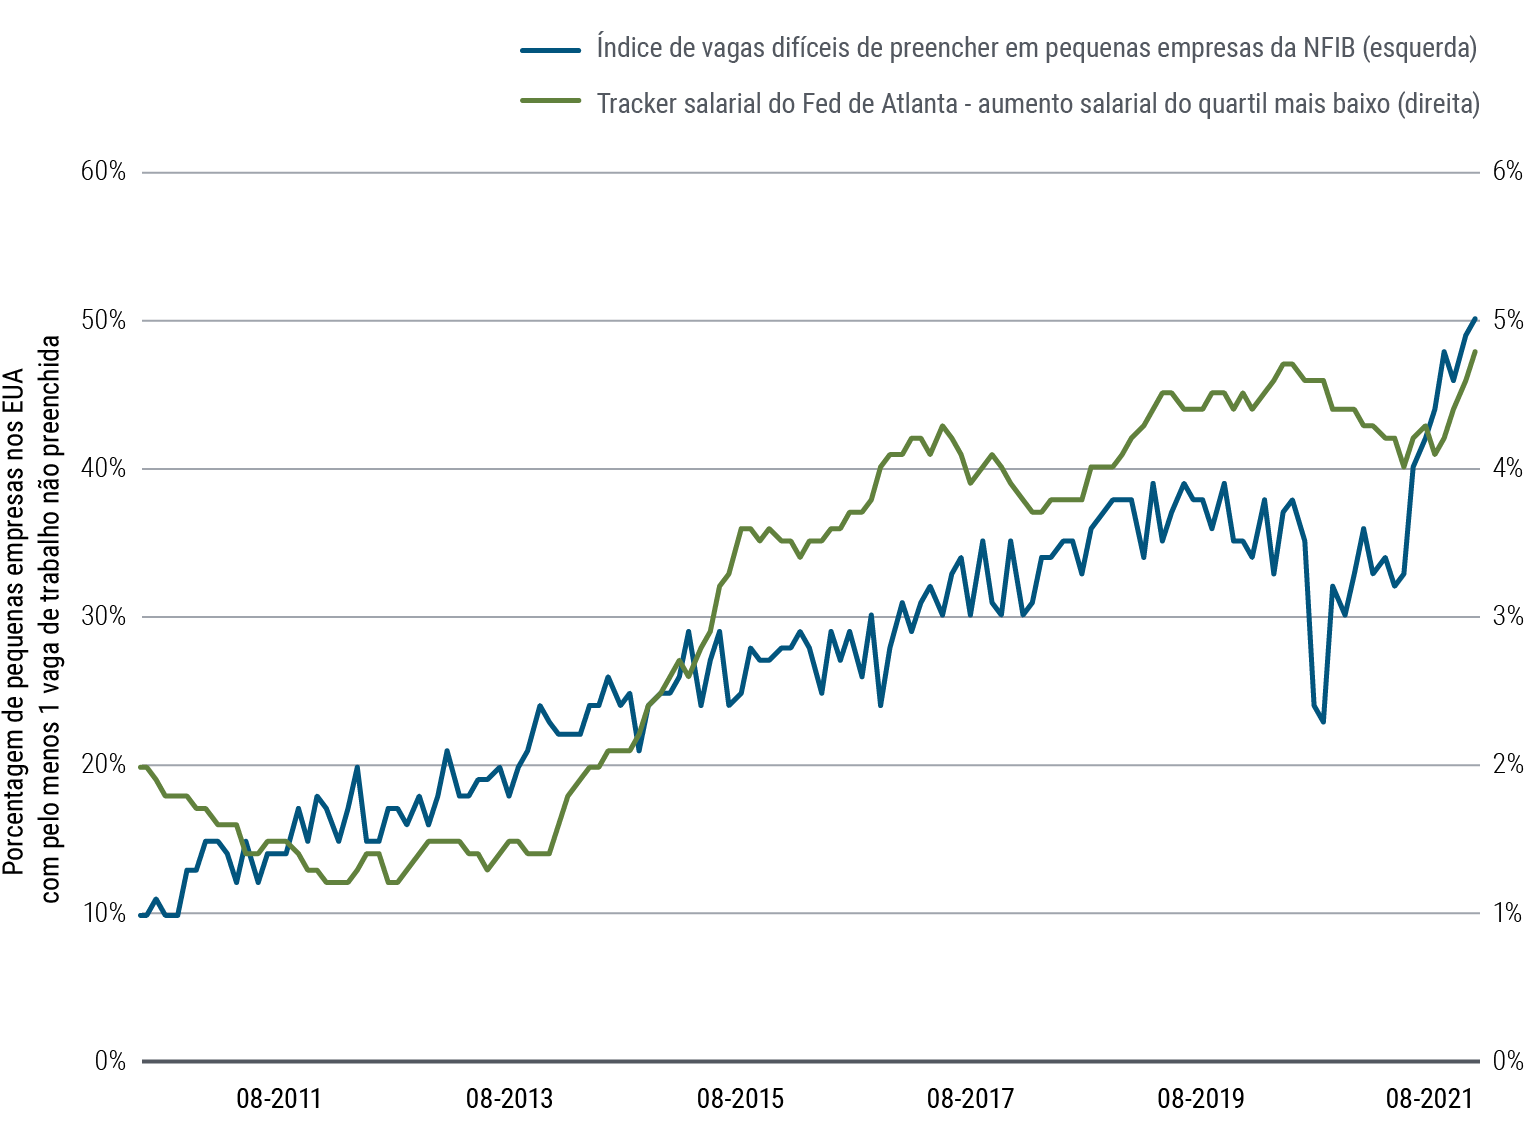 A Figura 1 é um gráfico de linhas que mostra dois conjuntos de dados de agosto de 2010 a agosto de 2021. O índice de vagas difíceis de preencher em empresas pequenas, da National Federation of Independent Business (U.S.), começa em 10 e sobe pouco acima de 50 nesse período, geralmente de forma constante, mas com uma queda de curto prazo em 2020. O aumento salarial do quartil mais baixo do tracker salarial do Federal Reserve Bank de Atlanta começa ao redor de 2% em agosto de 2010, cai por alguns anos, depois aumenta de forma irregular, atingindo 4,8% em agosto de 2021.